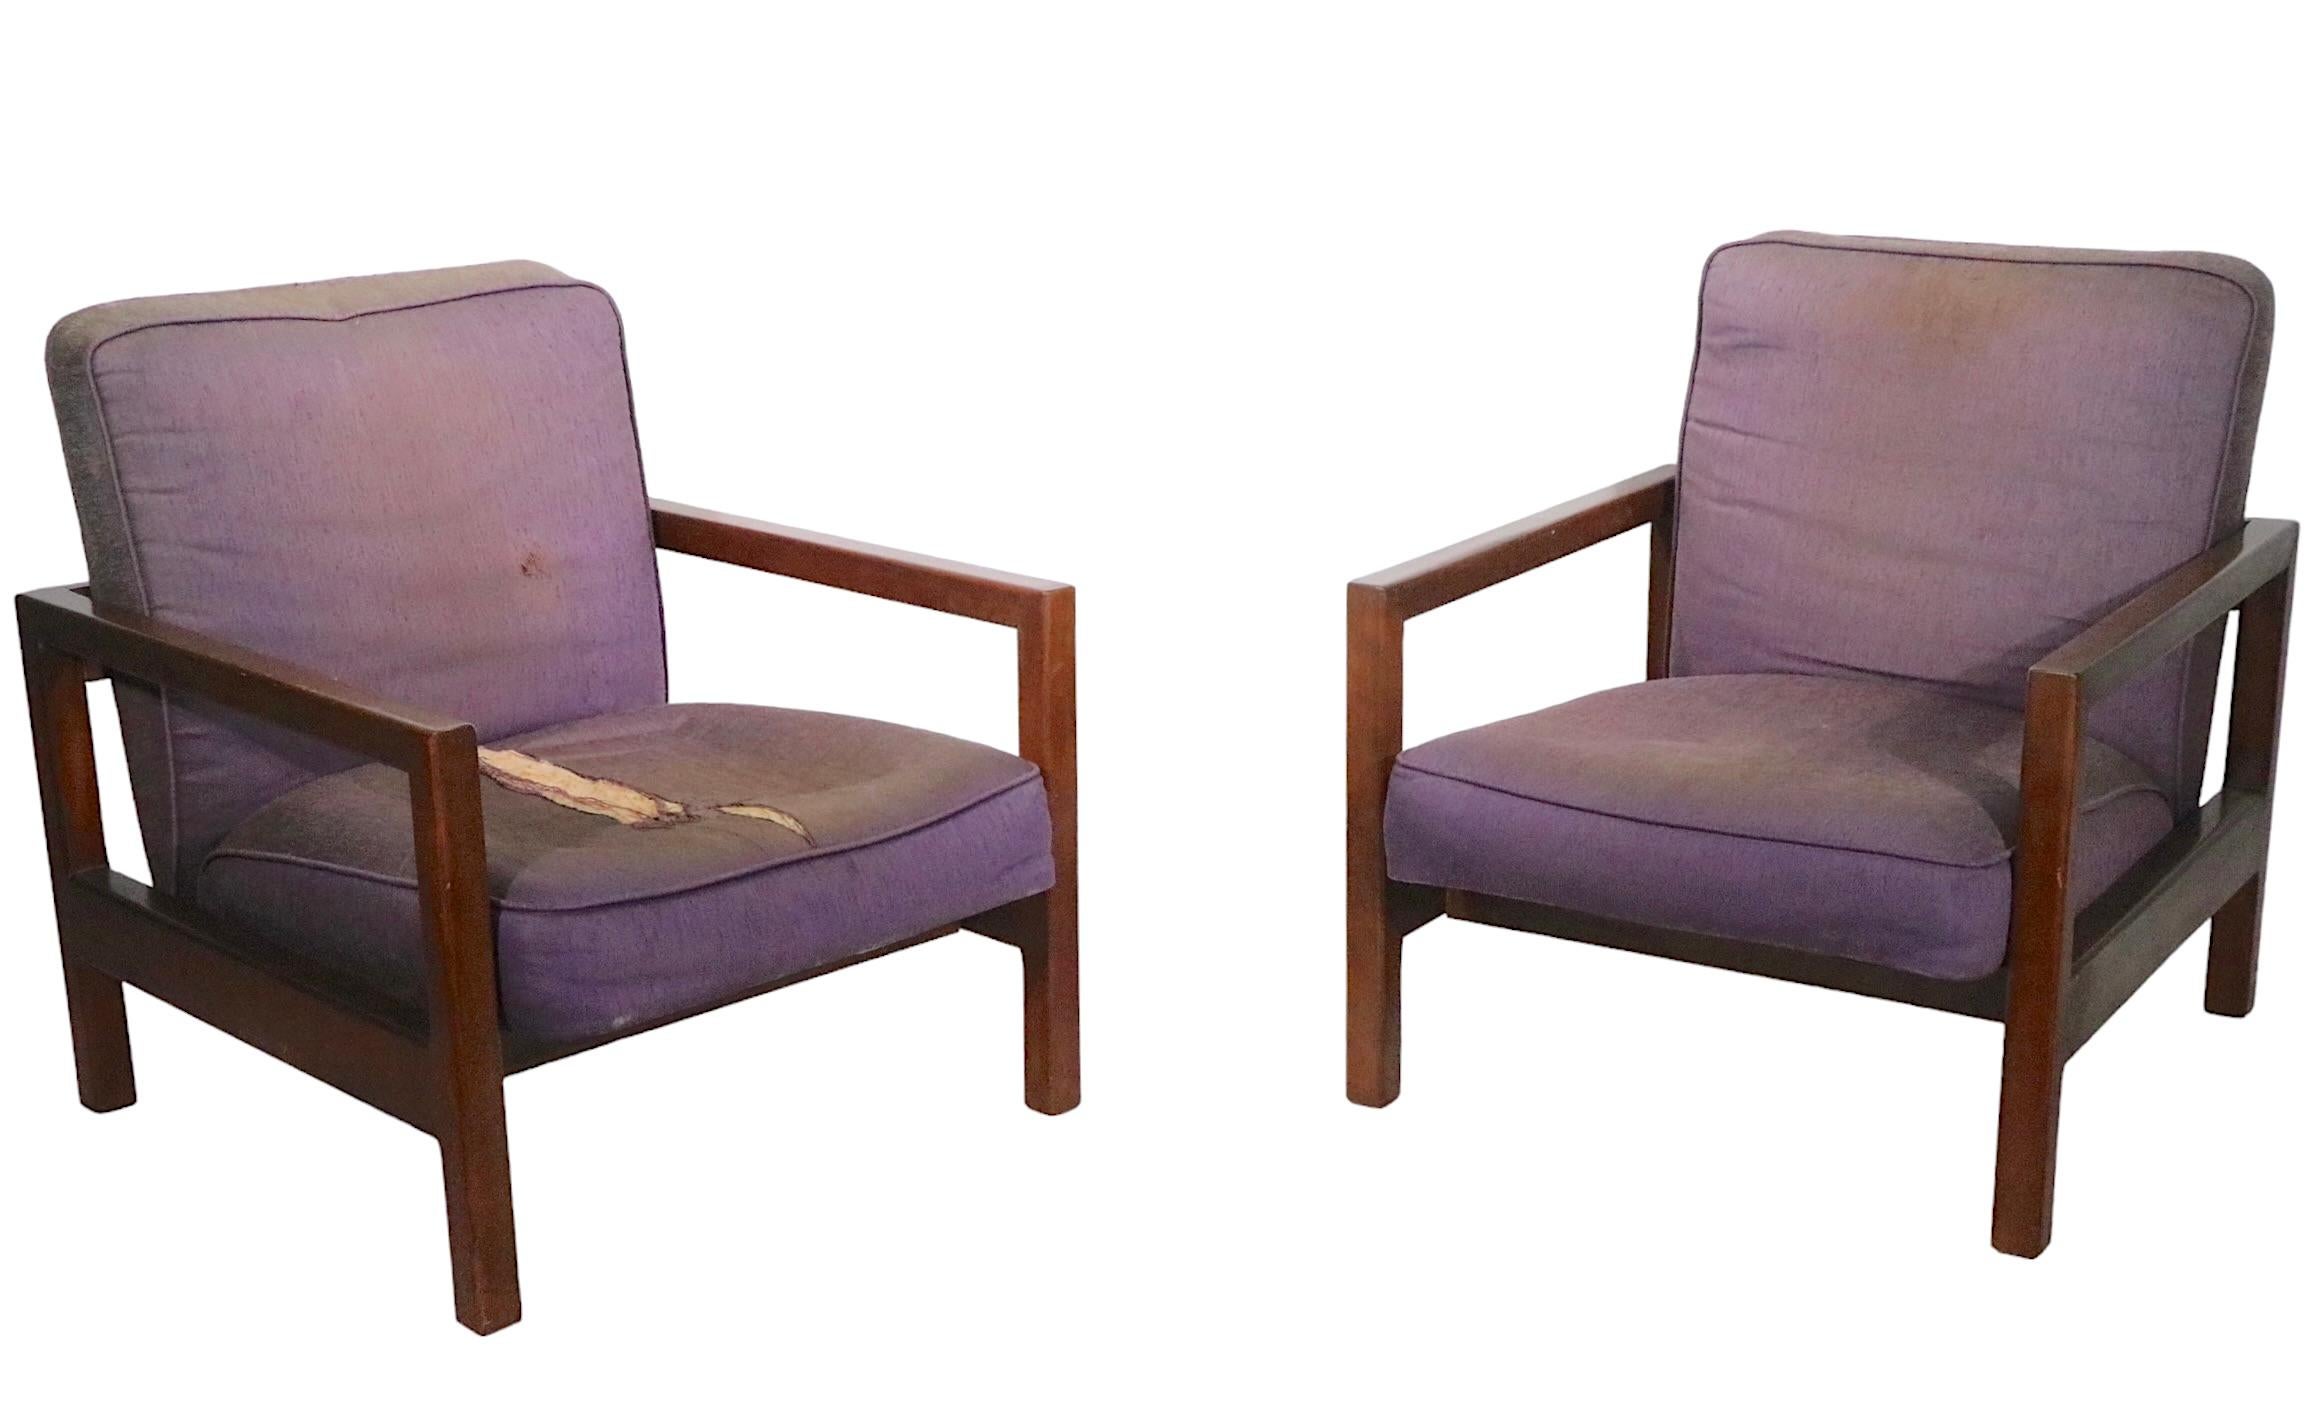 Paire de chaises de salon sophistiquées, chics et élégantes, conçues par George Nelson pour Herman Miller vers les années 1950. Les chaises sont dotées d'un cadre en érable massif et d'une assise et d'un dossier épais et rembourrés. Le rembourrage